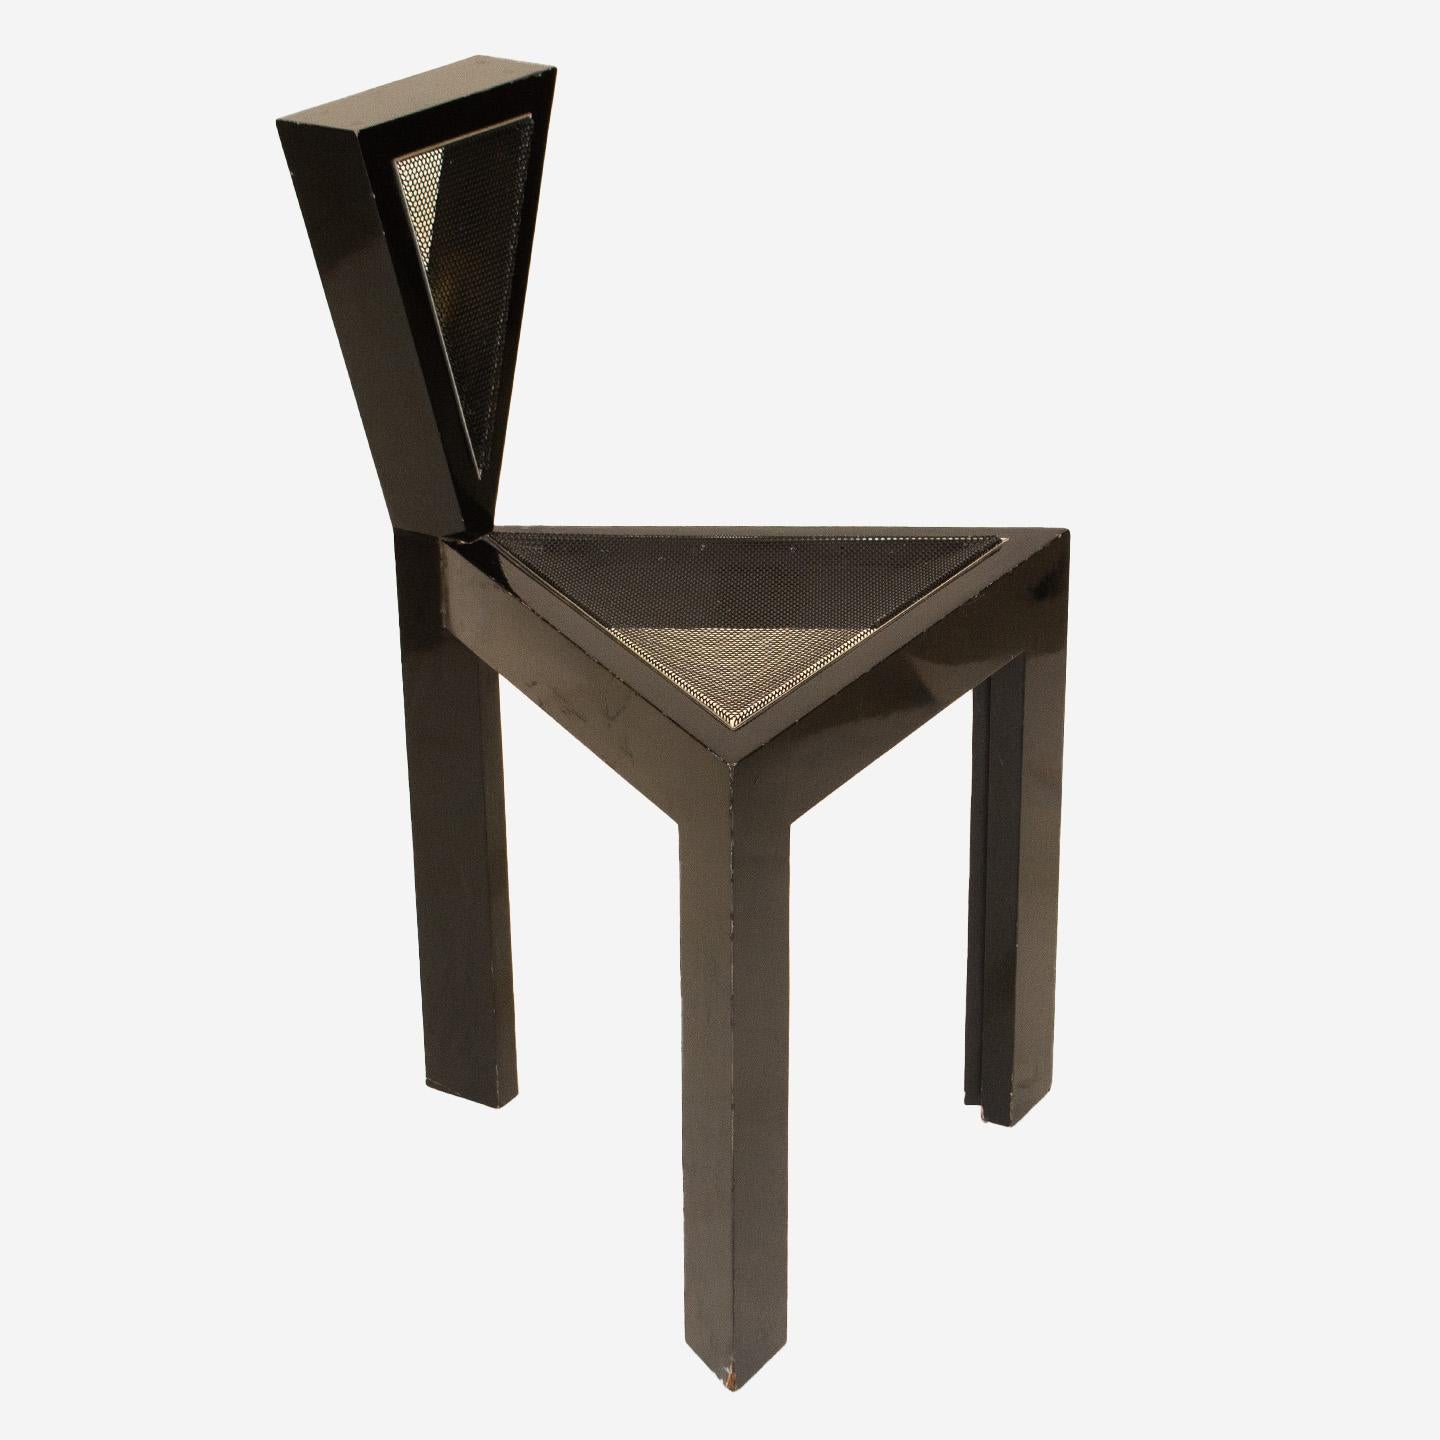 Cette chaise unique de style Memphis est un prototype expérimental unique en son genre. Conçue et fabriquée par le designer de meubles Carl Steele, elle est composée de bois laqué, d'aluminium poli et d'un siège en maille d'acier peint. Le designer